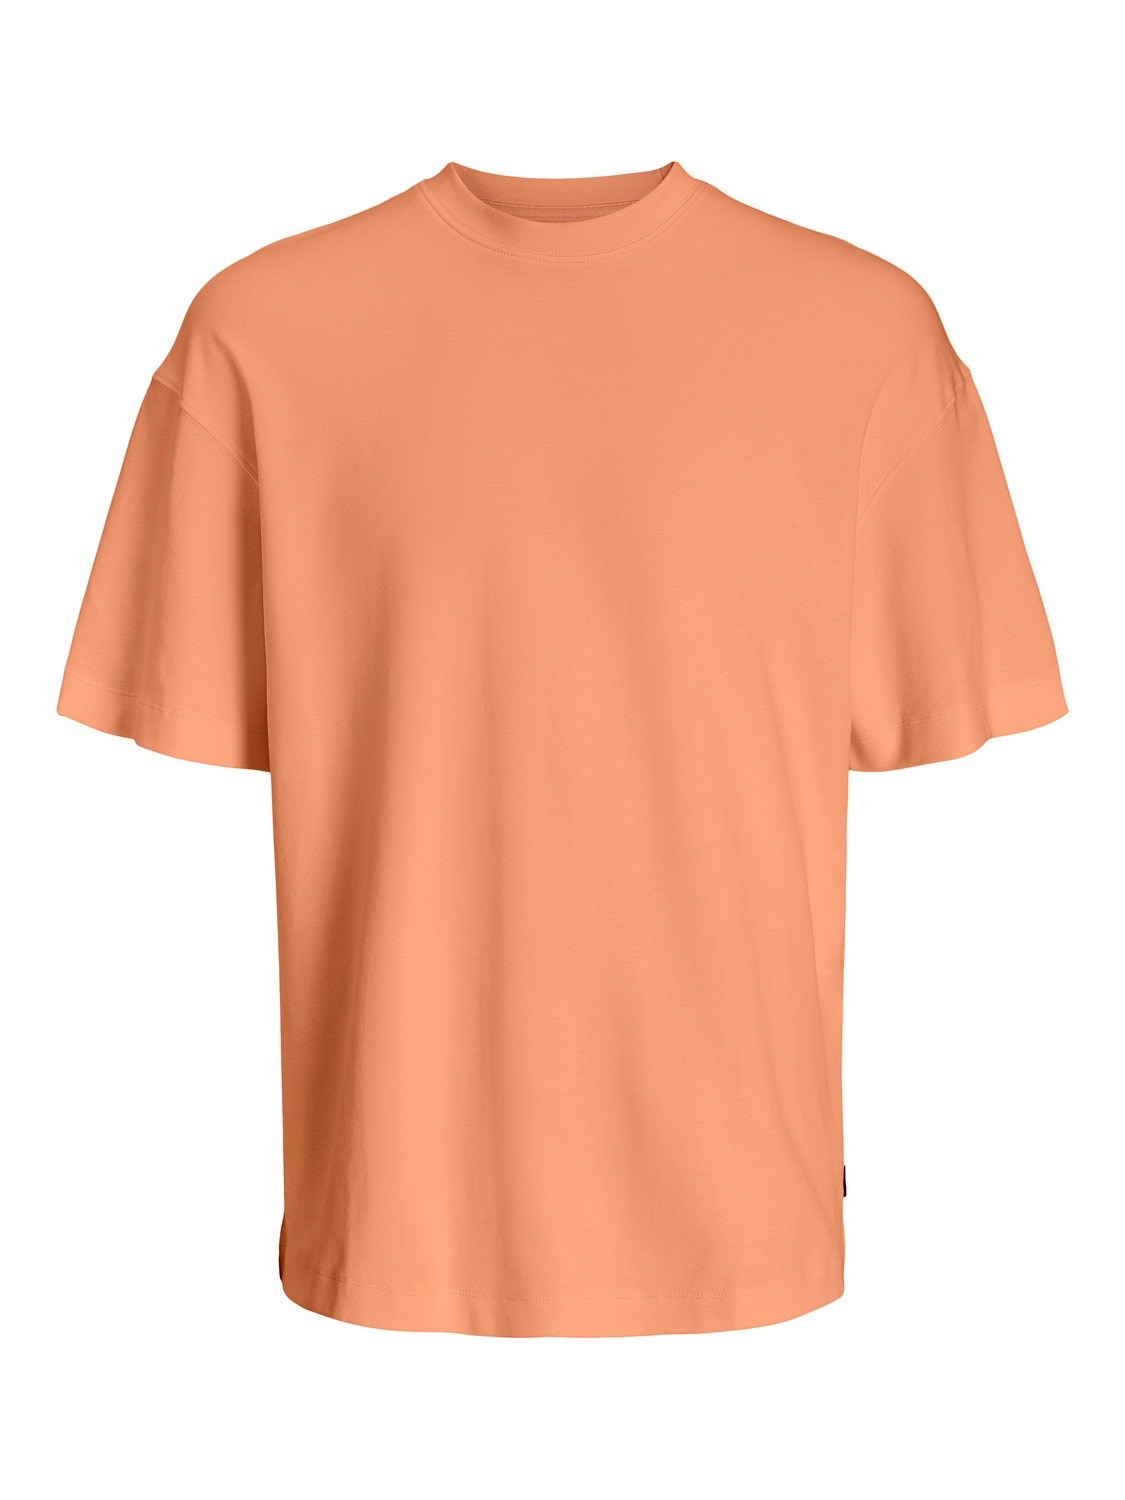 Jack & Jones Camiseta Liso Cuello redondo -Apricot Ice  - 12254412